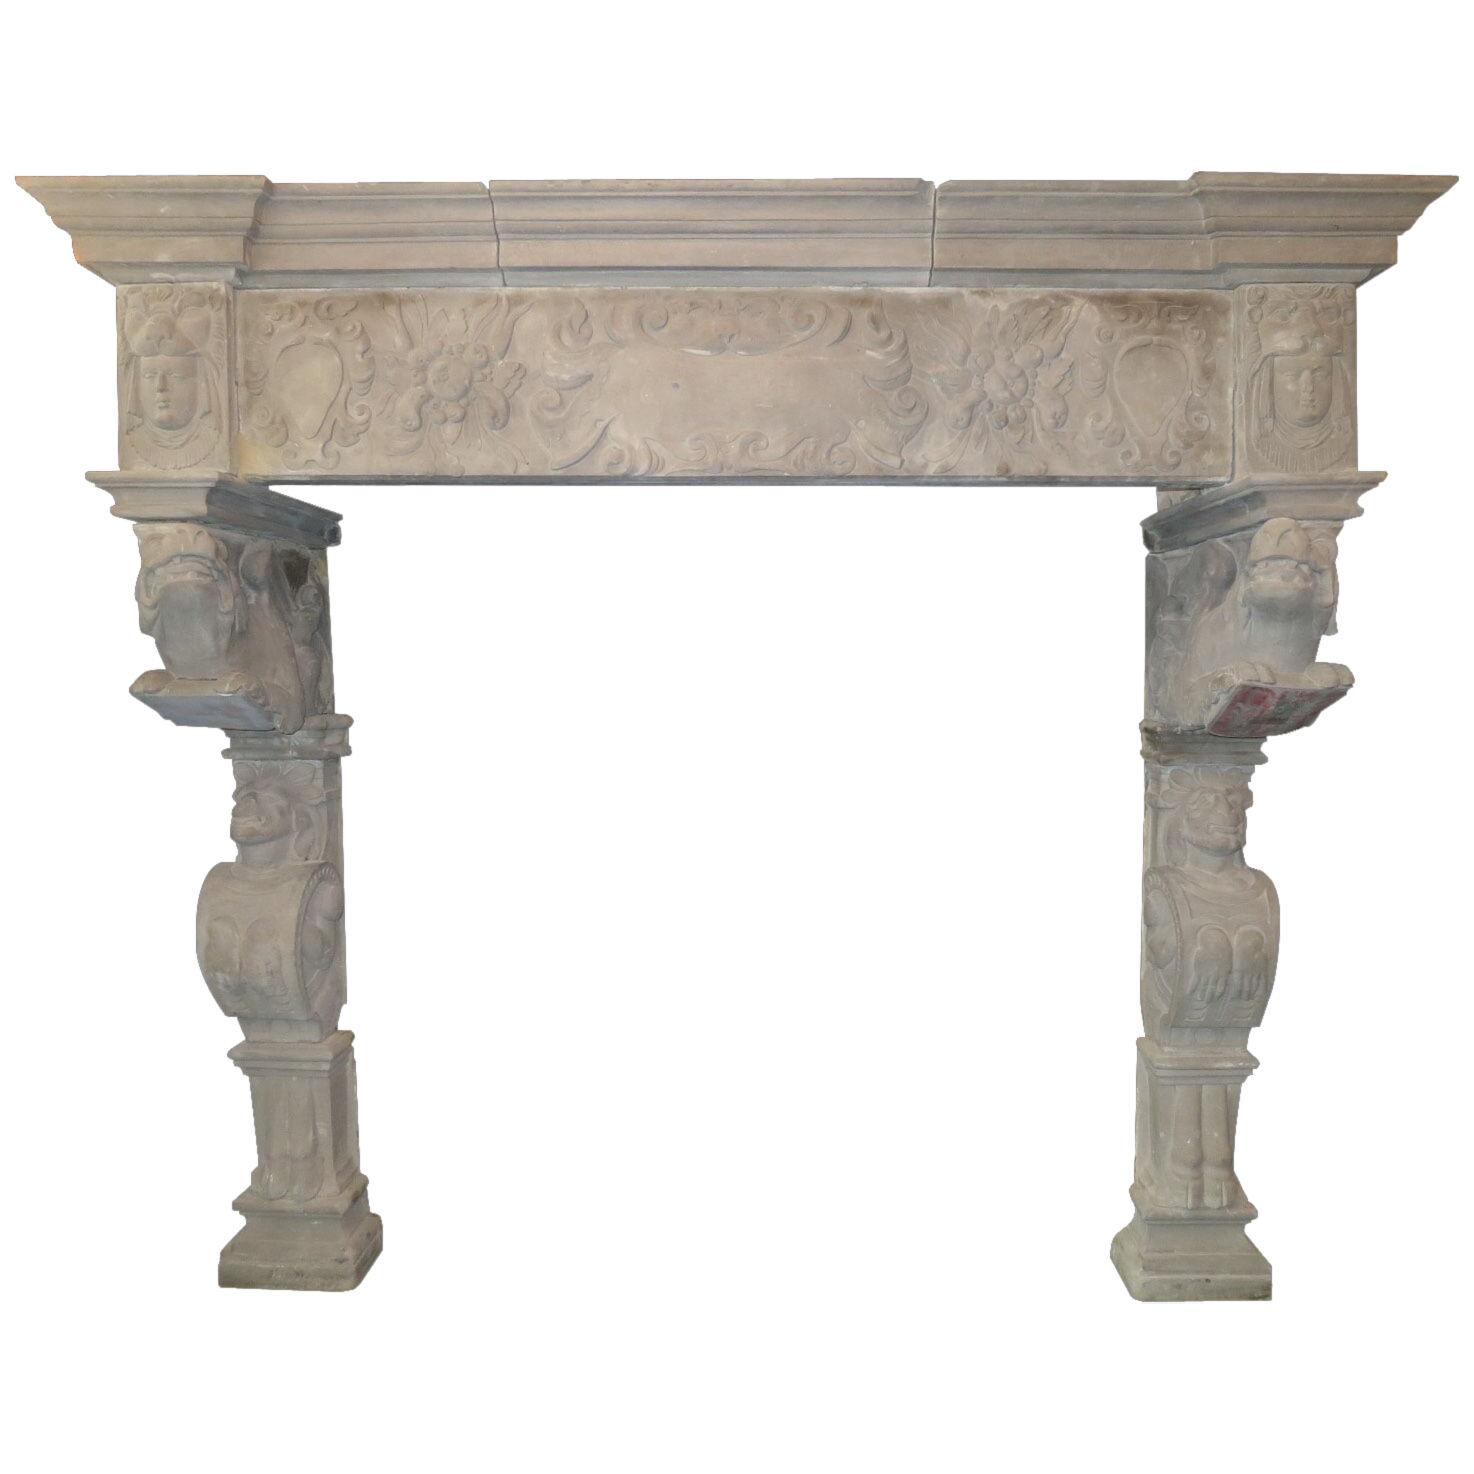 A Monumental Antique Stone Renaissance Fireplace Mantel